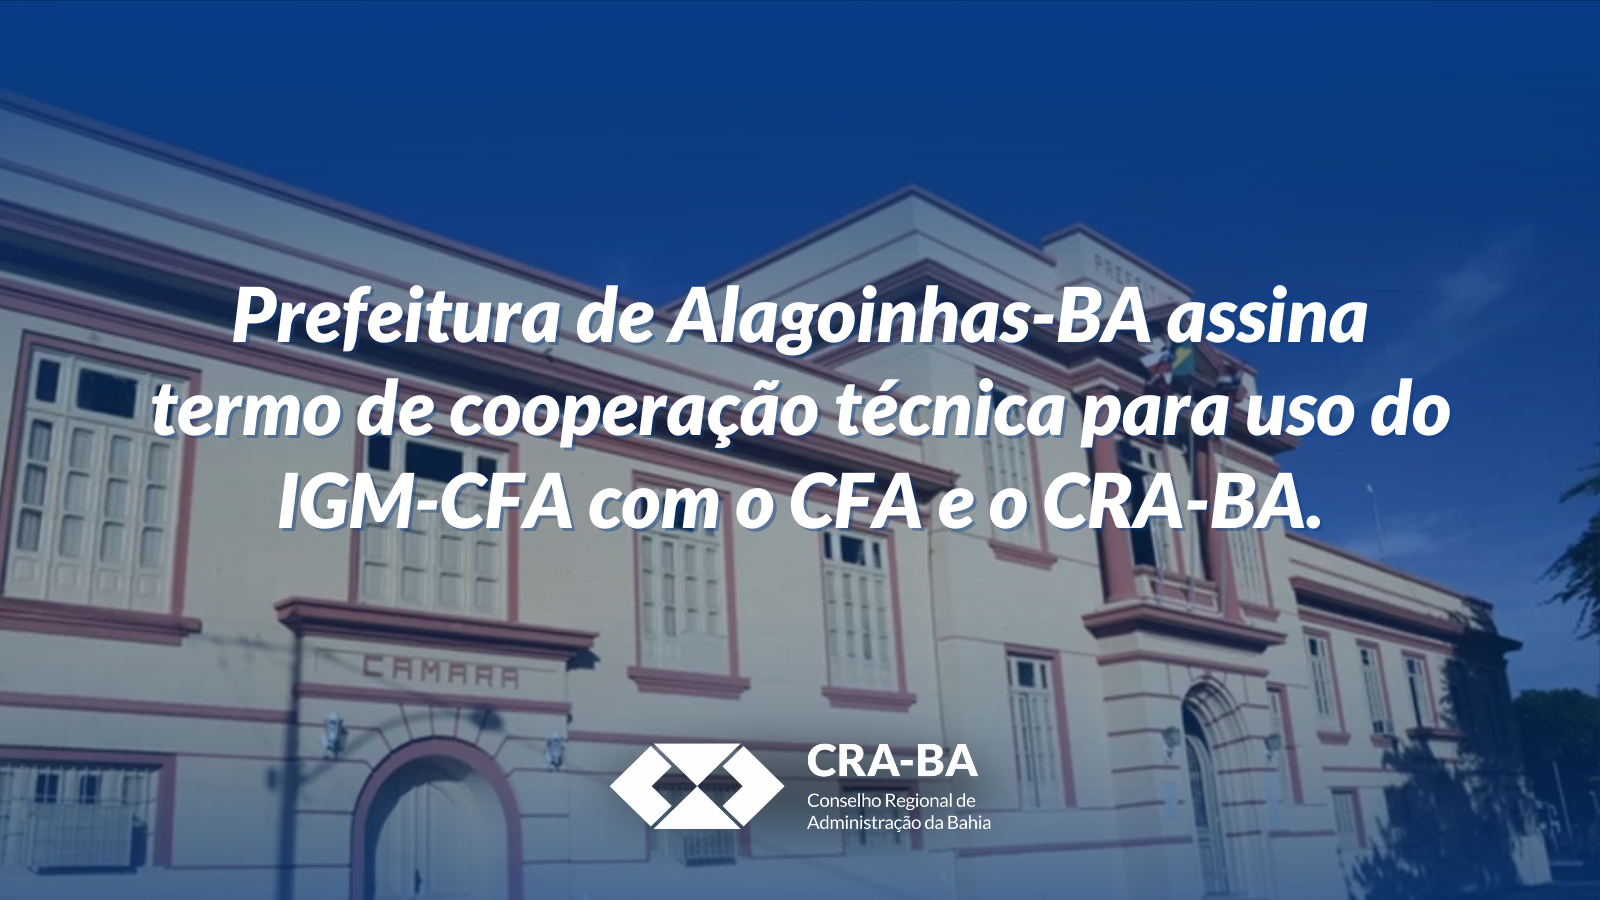 Prefeitura de Alagoinhas-BA assina termo de cooperação técnica para uso do IGM-CFA com o CFA e o CRA-BA_